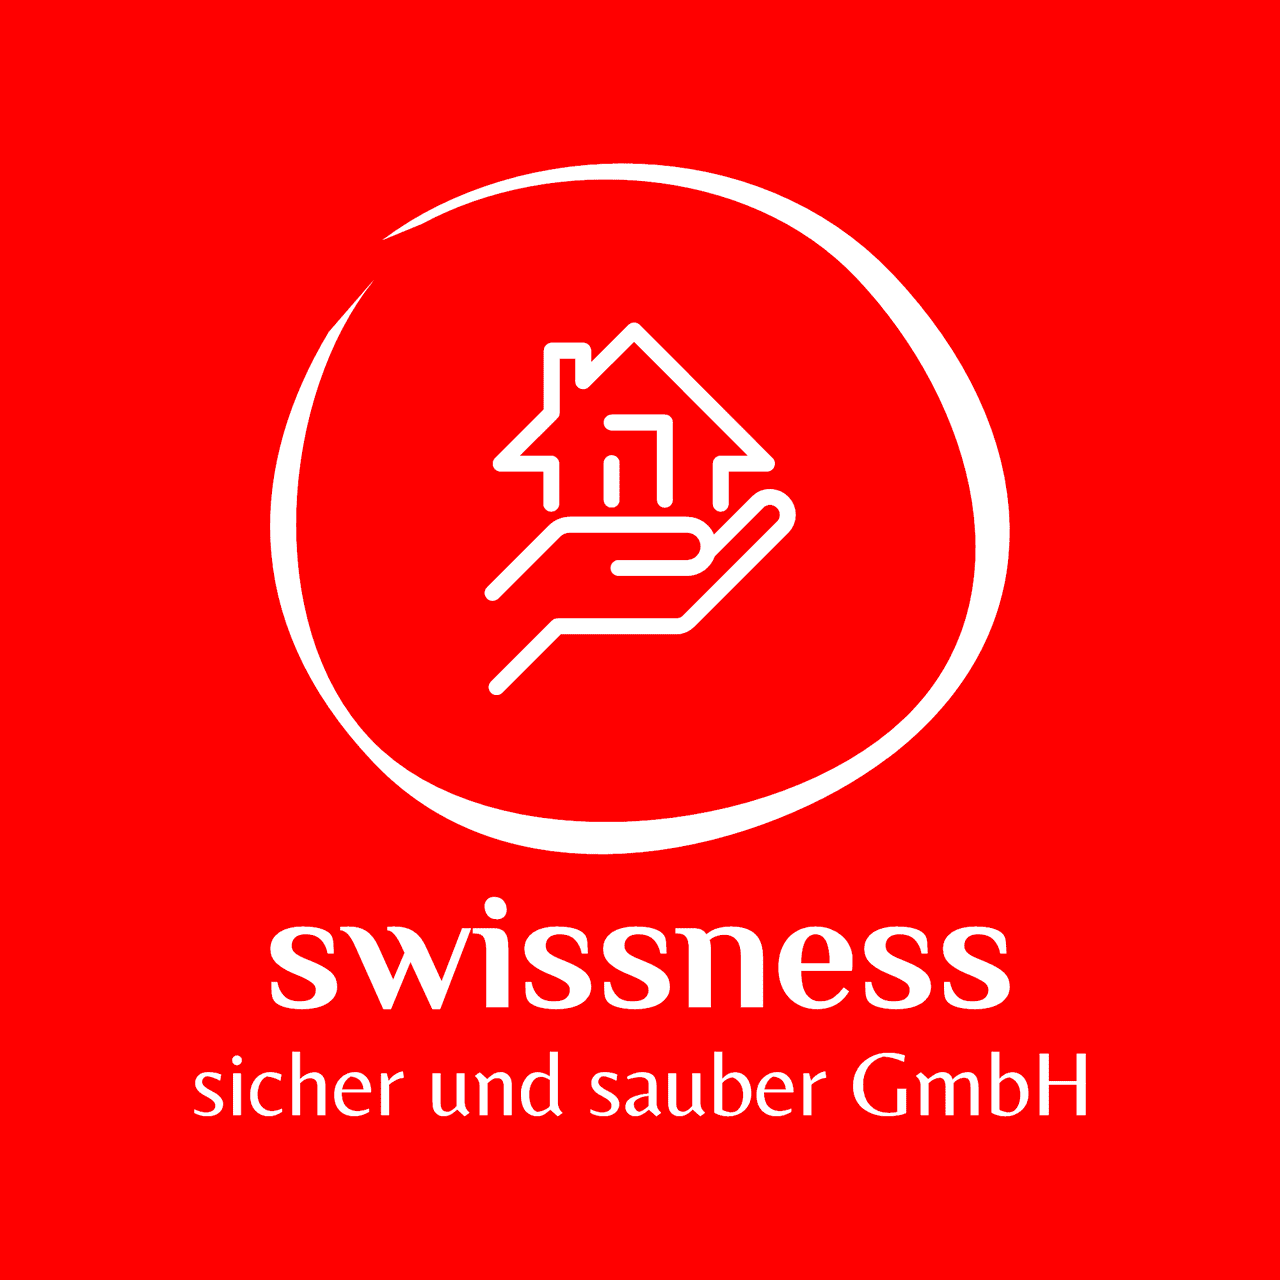 Swissness sicher und sauber GmbH